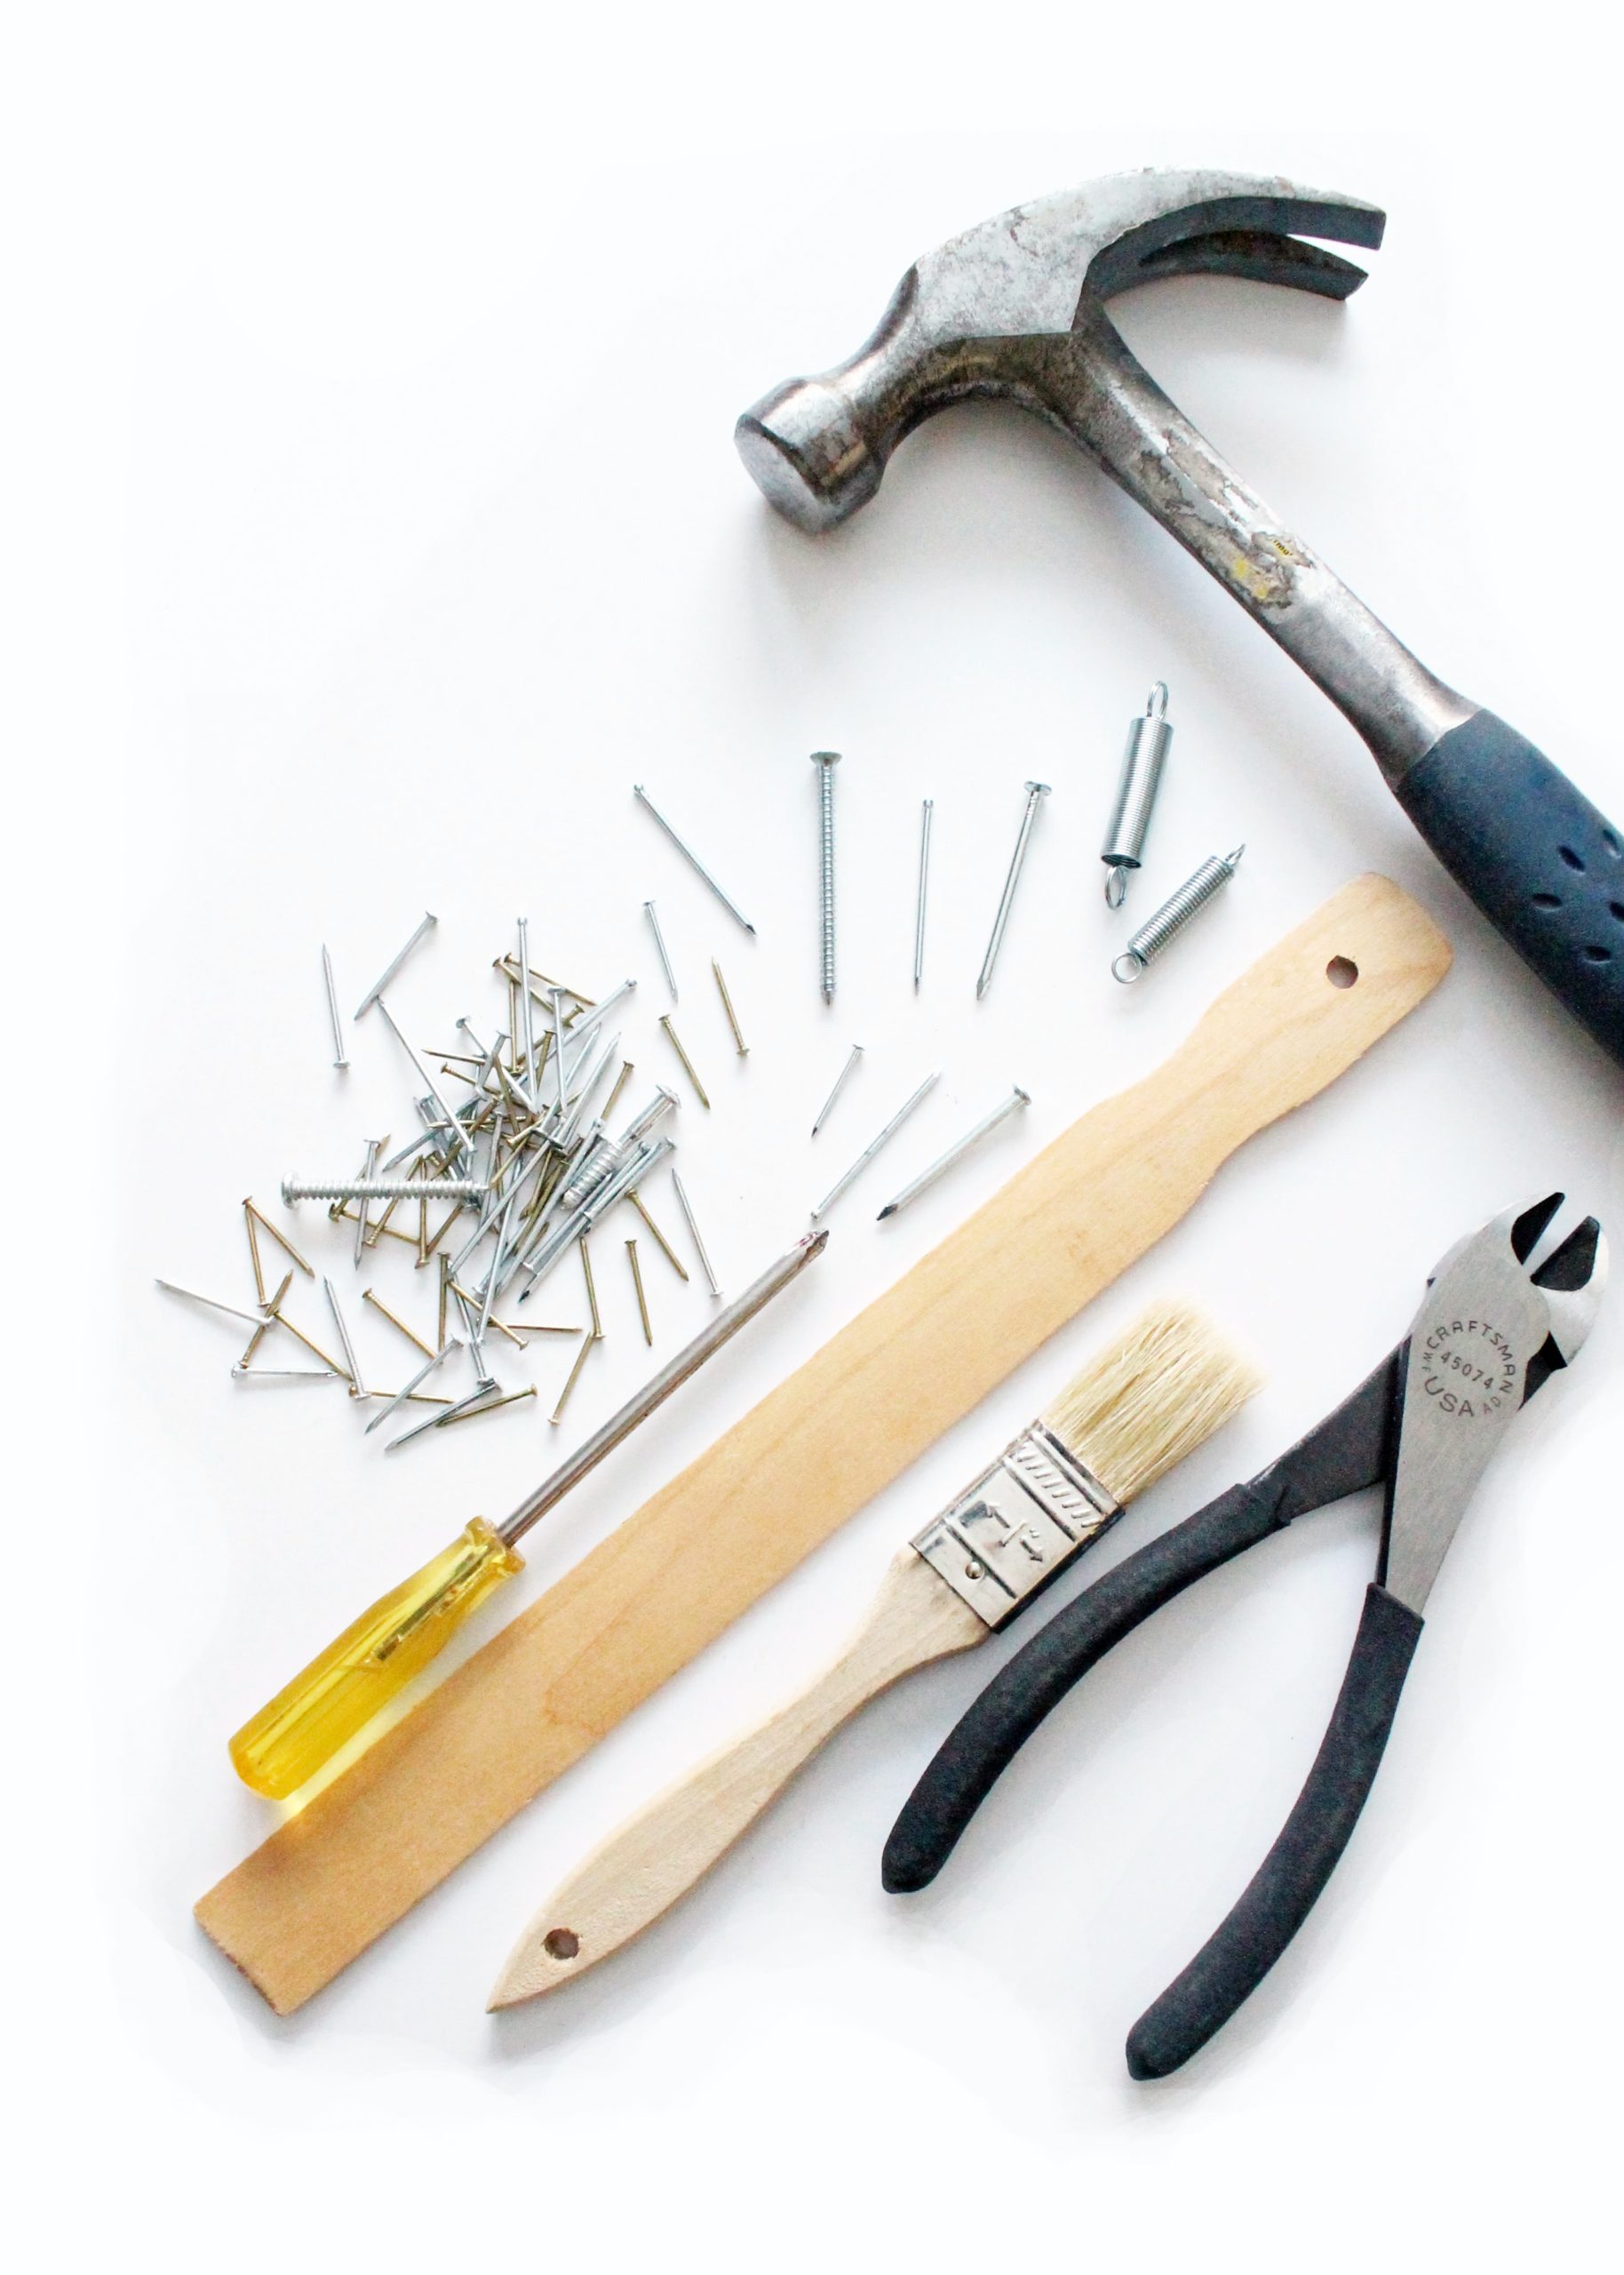 Hammer, Schraubendreher, Nägel und weiteres Werkzeug auf weißer Fläche